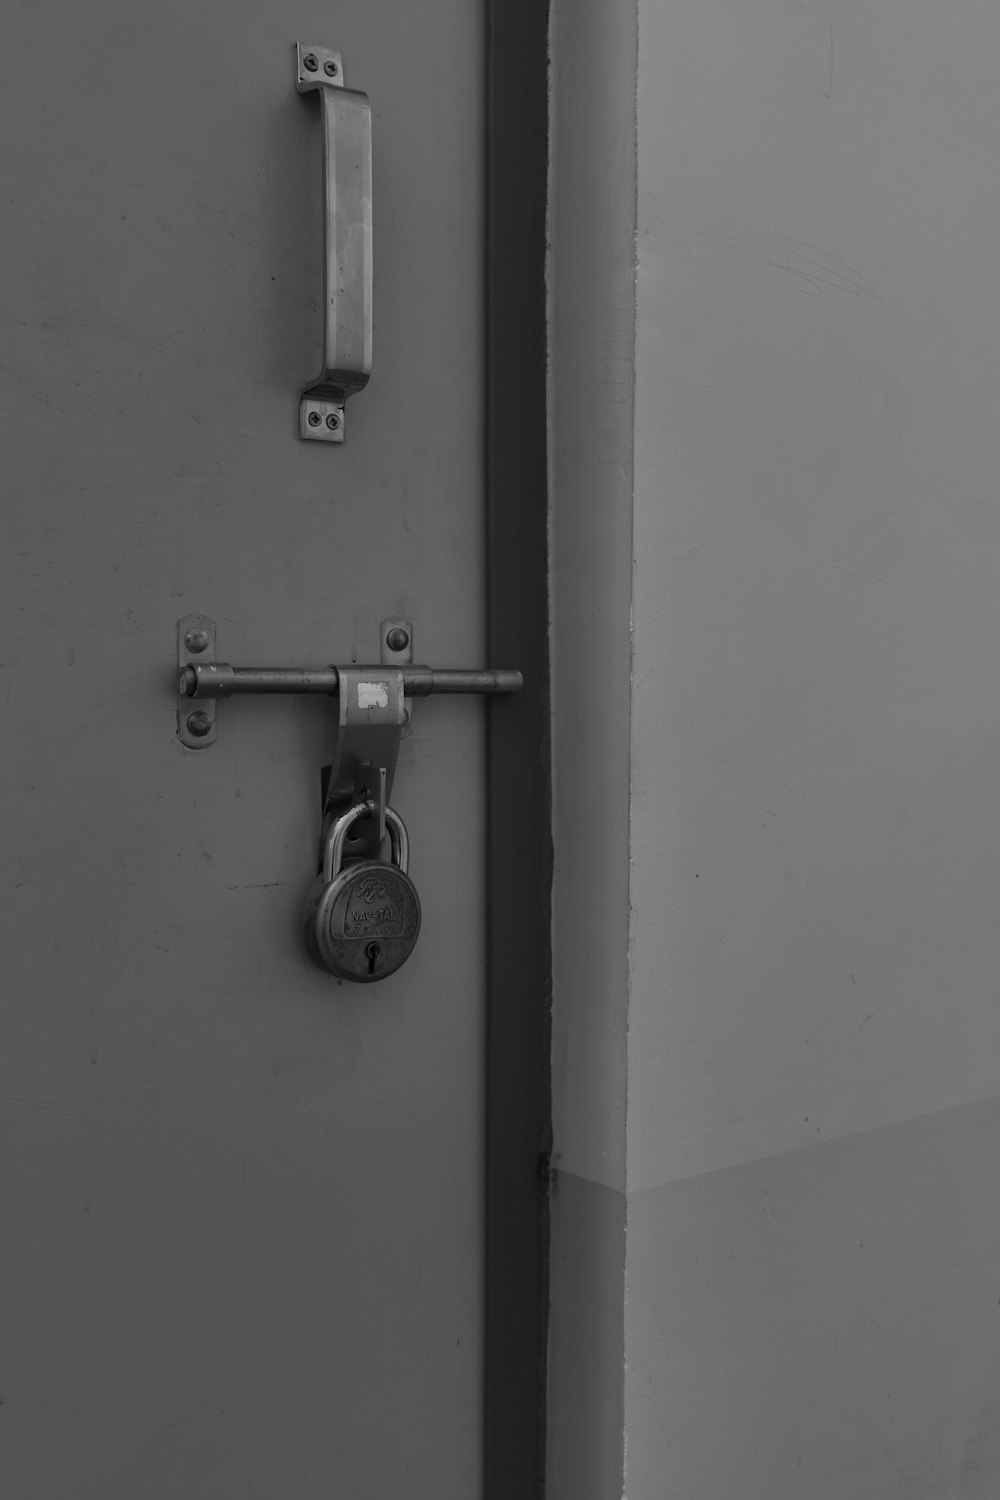 Una foto en blanco y negro de una cerradura en una puerta